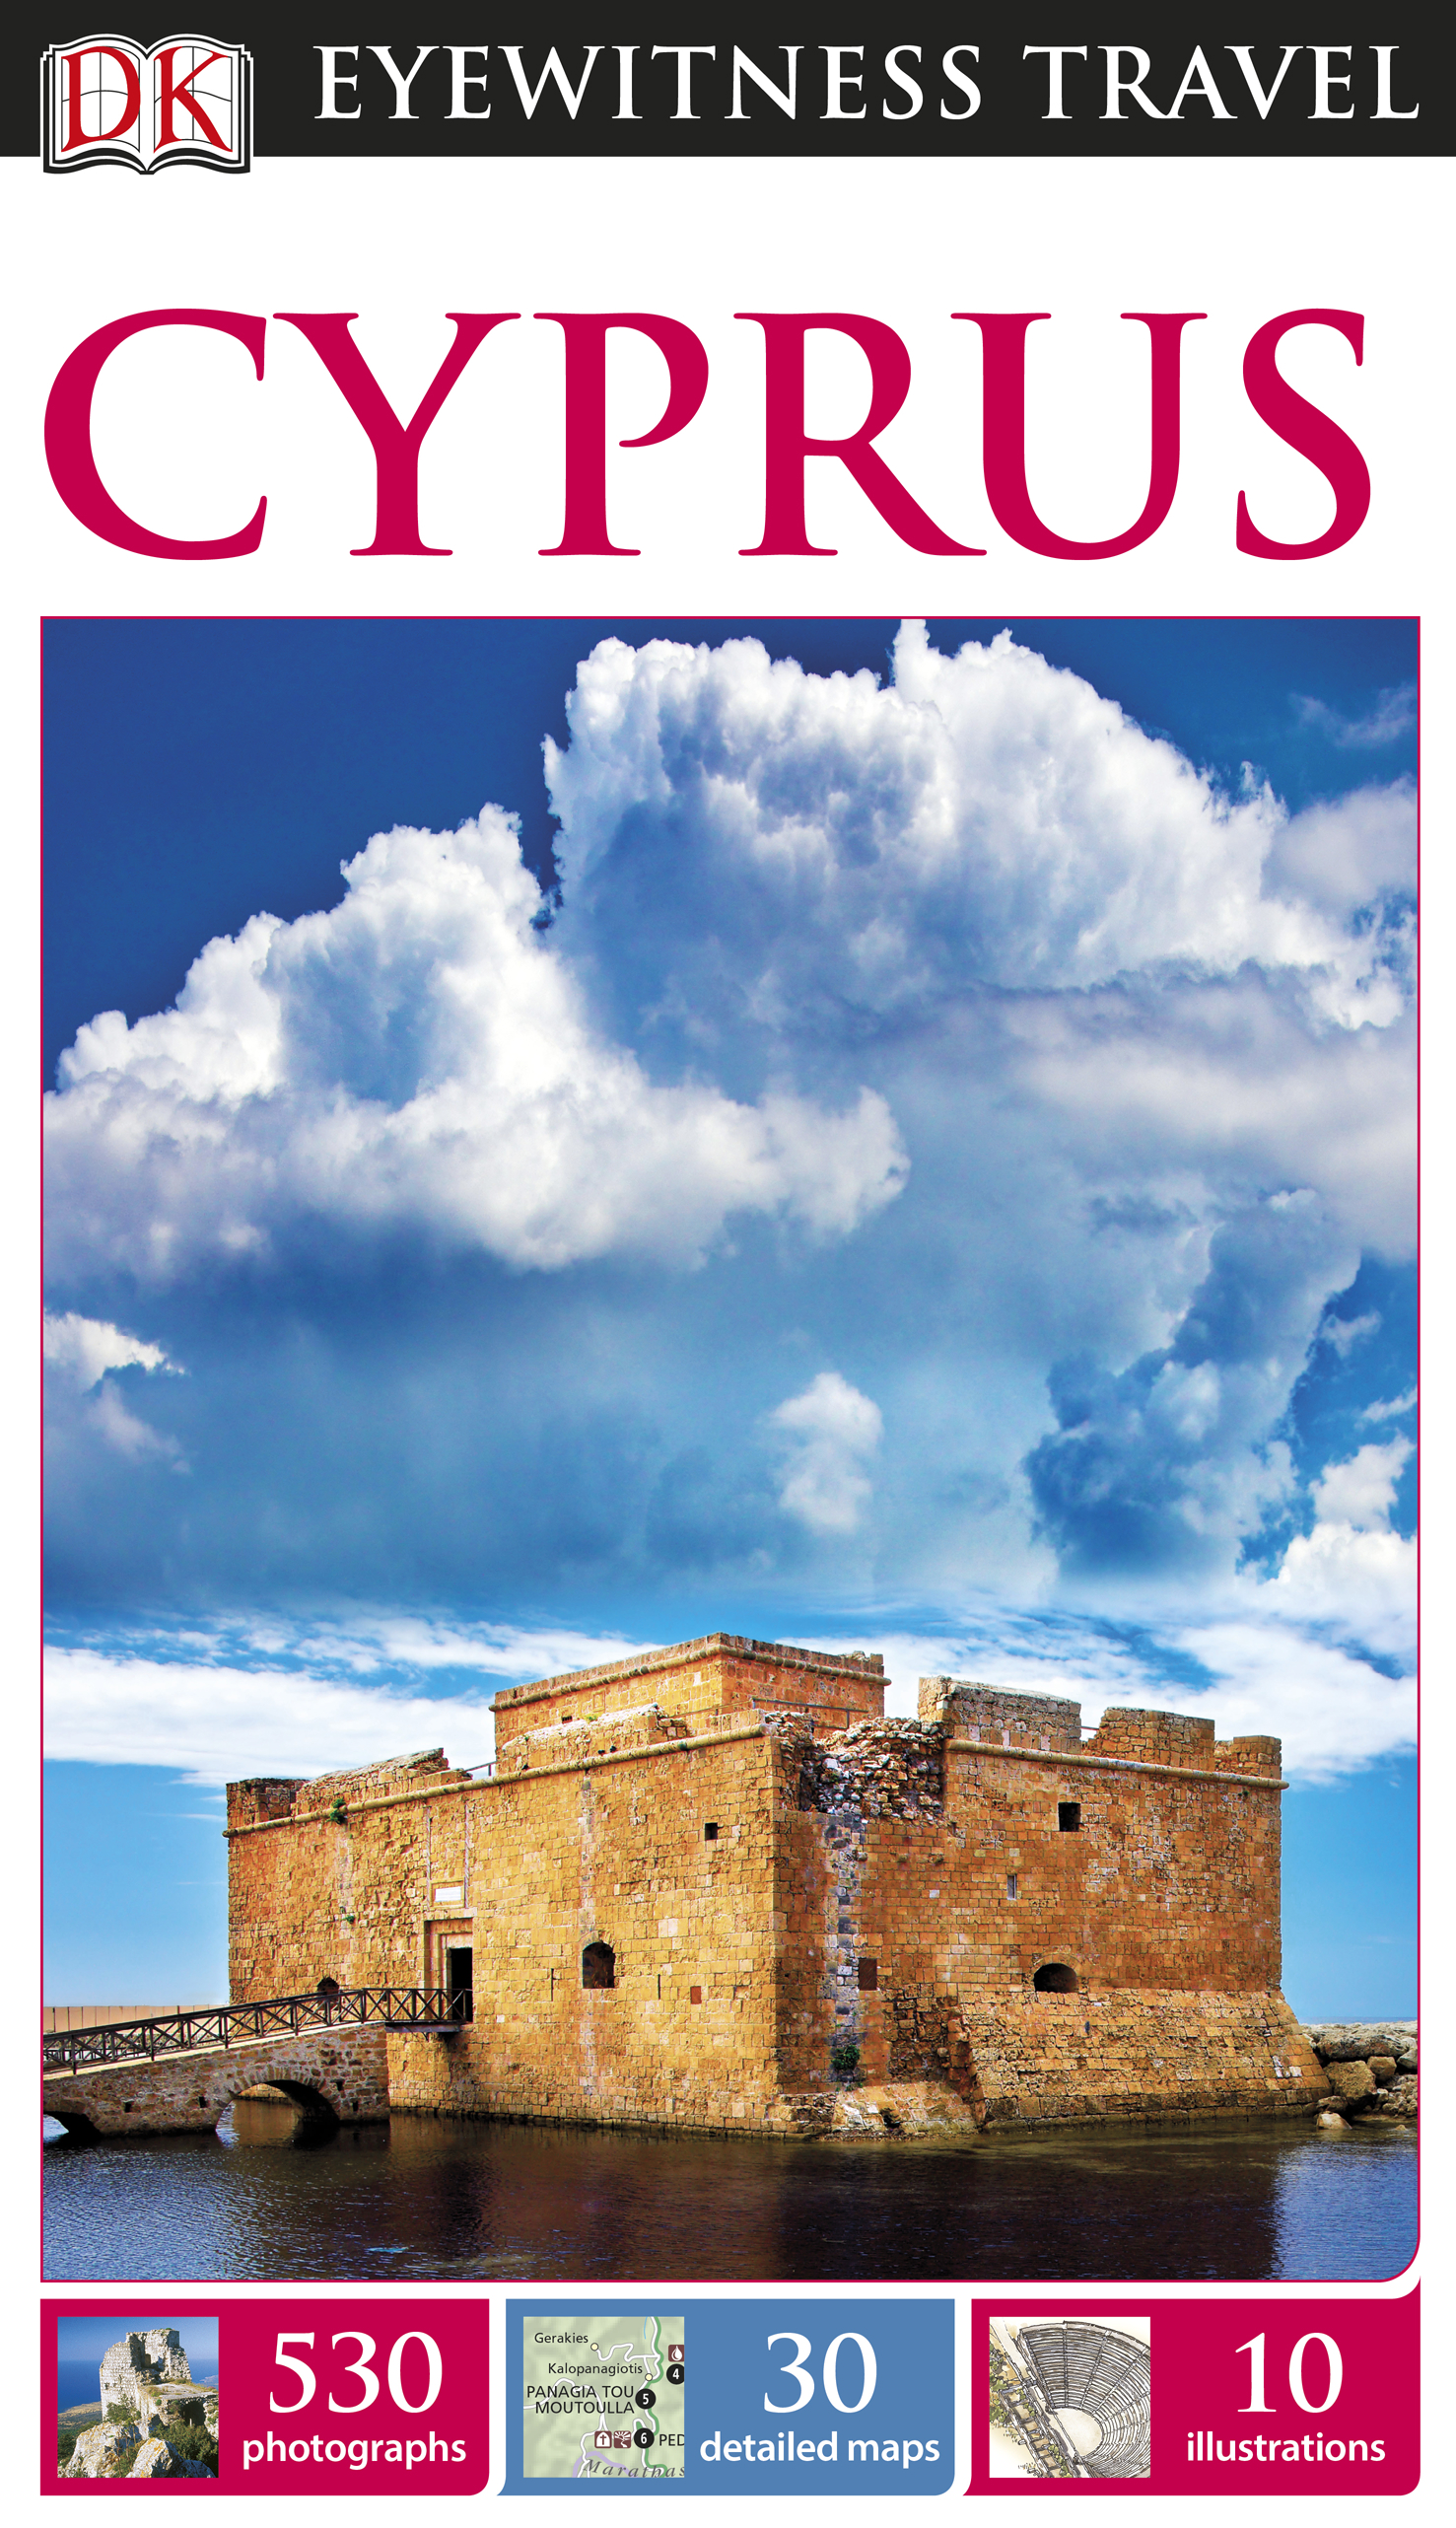 DK Eyewitness Travel Guide: Cyprus